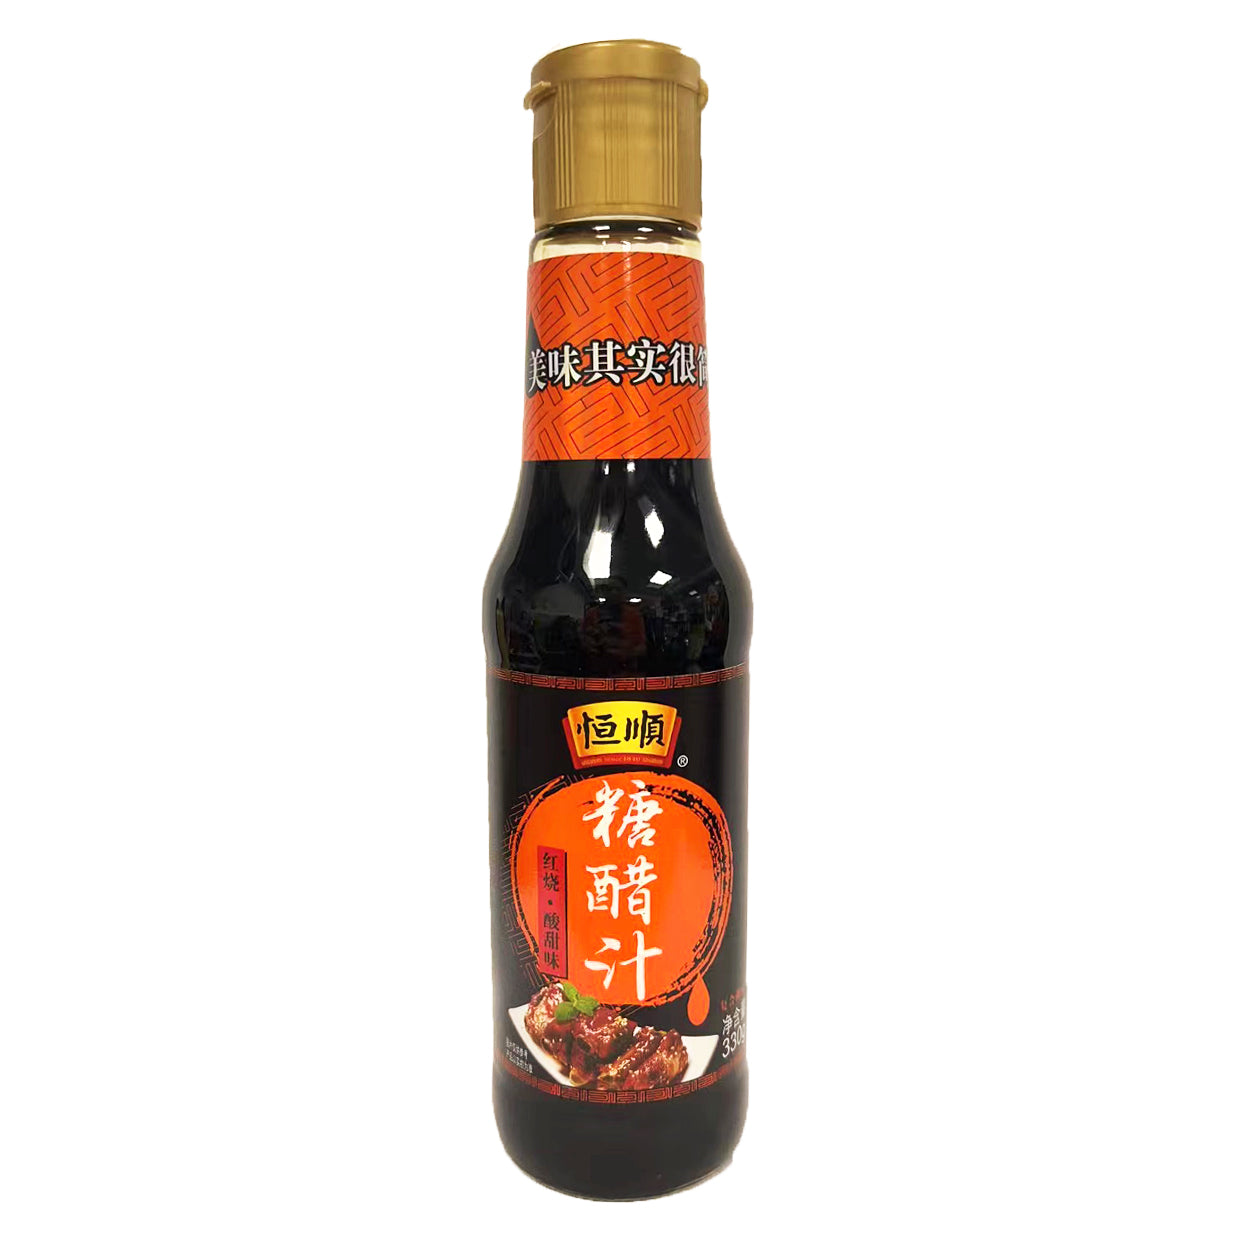 Hengshun Sweet Vinegar 330g ~ 恒顺 糖醋汁 330g